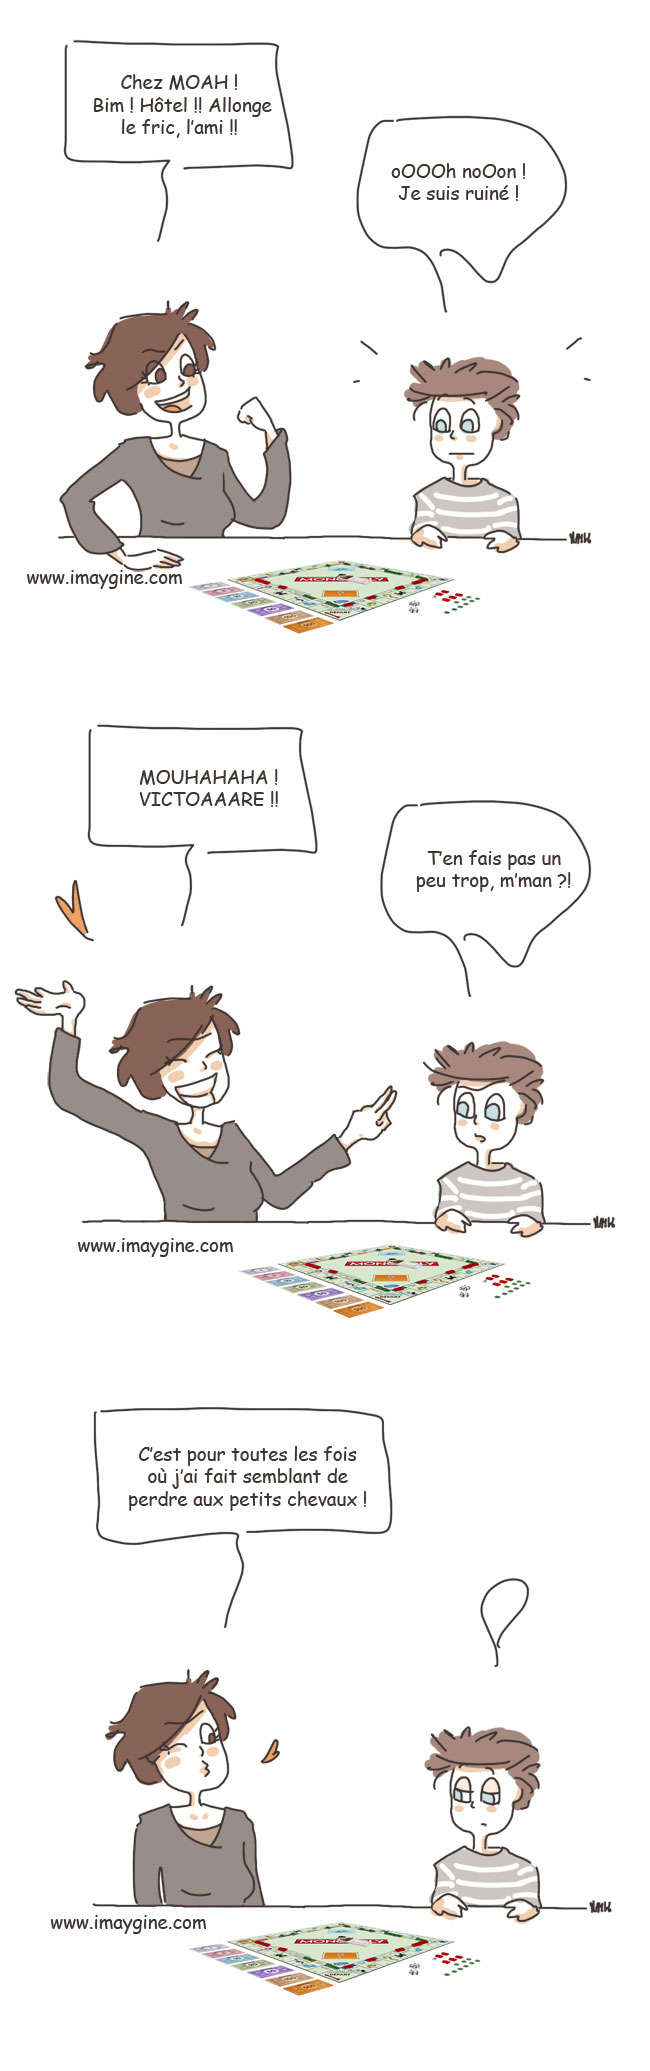 monopoly